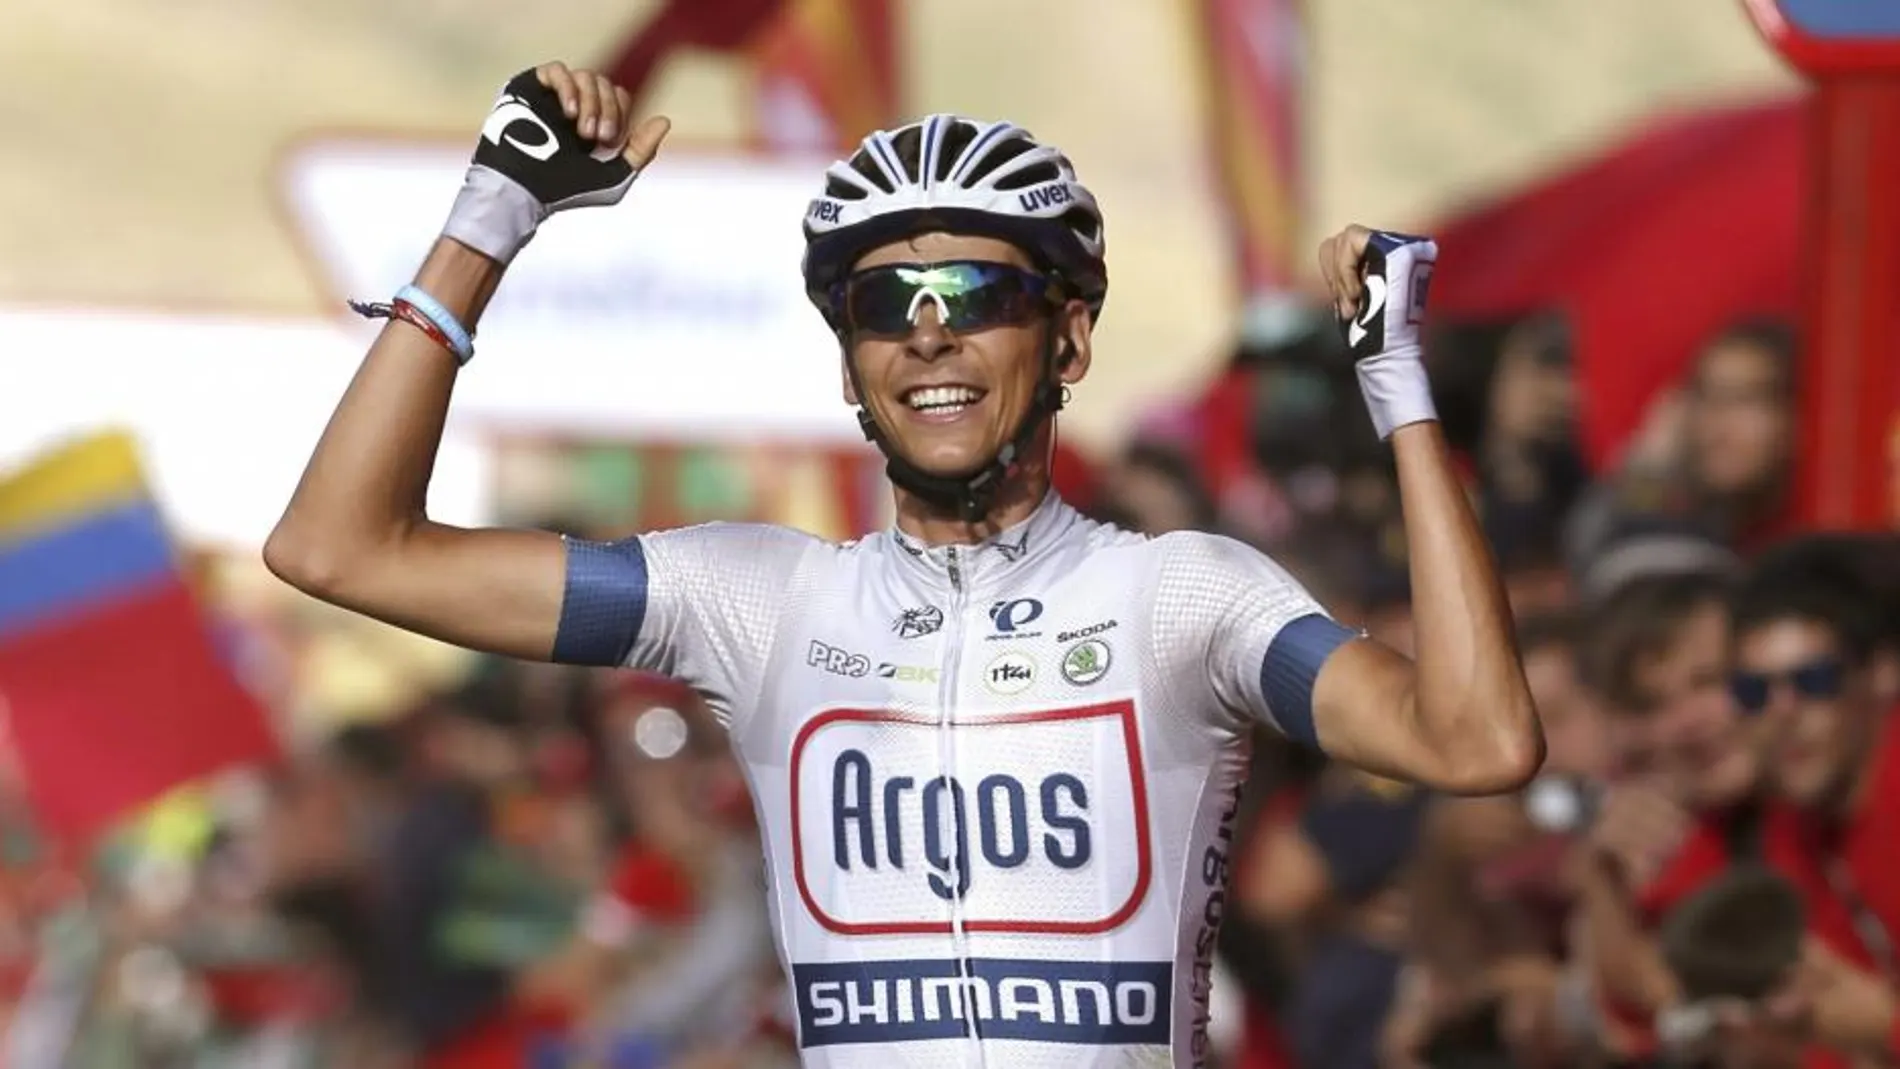 El francés Warren Barguil (Argos) se impone vencedor de la decimosexta etapa de la Vuelta a España disputada hoy entre Graus y la Estación de Formigal, de 146,8 kilómetros